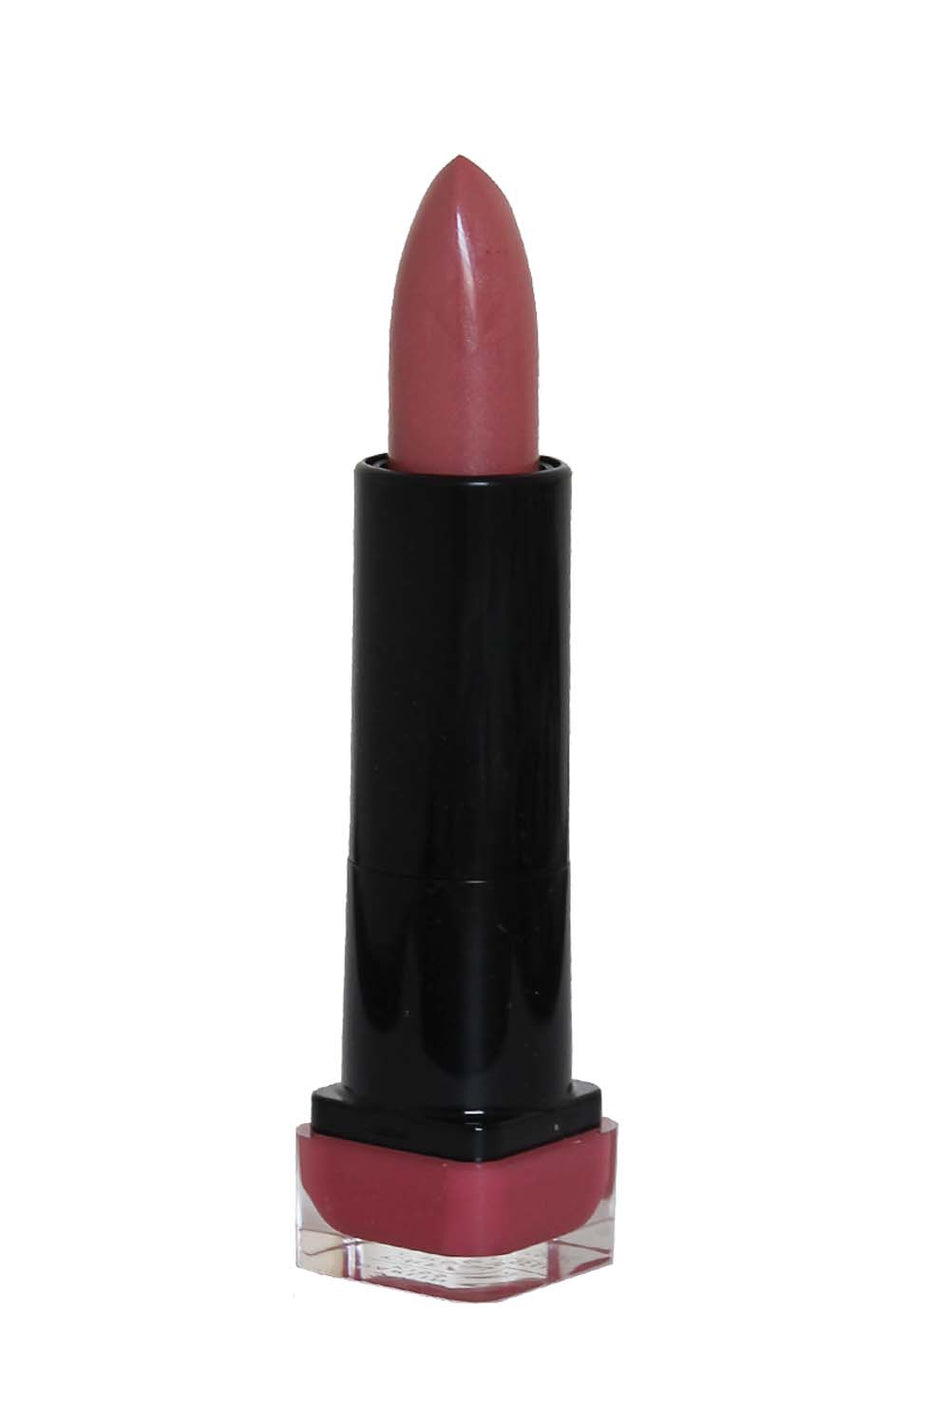 Covergirl Lipsticks